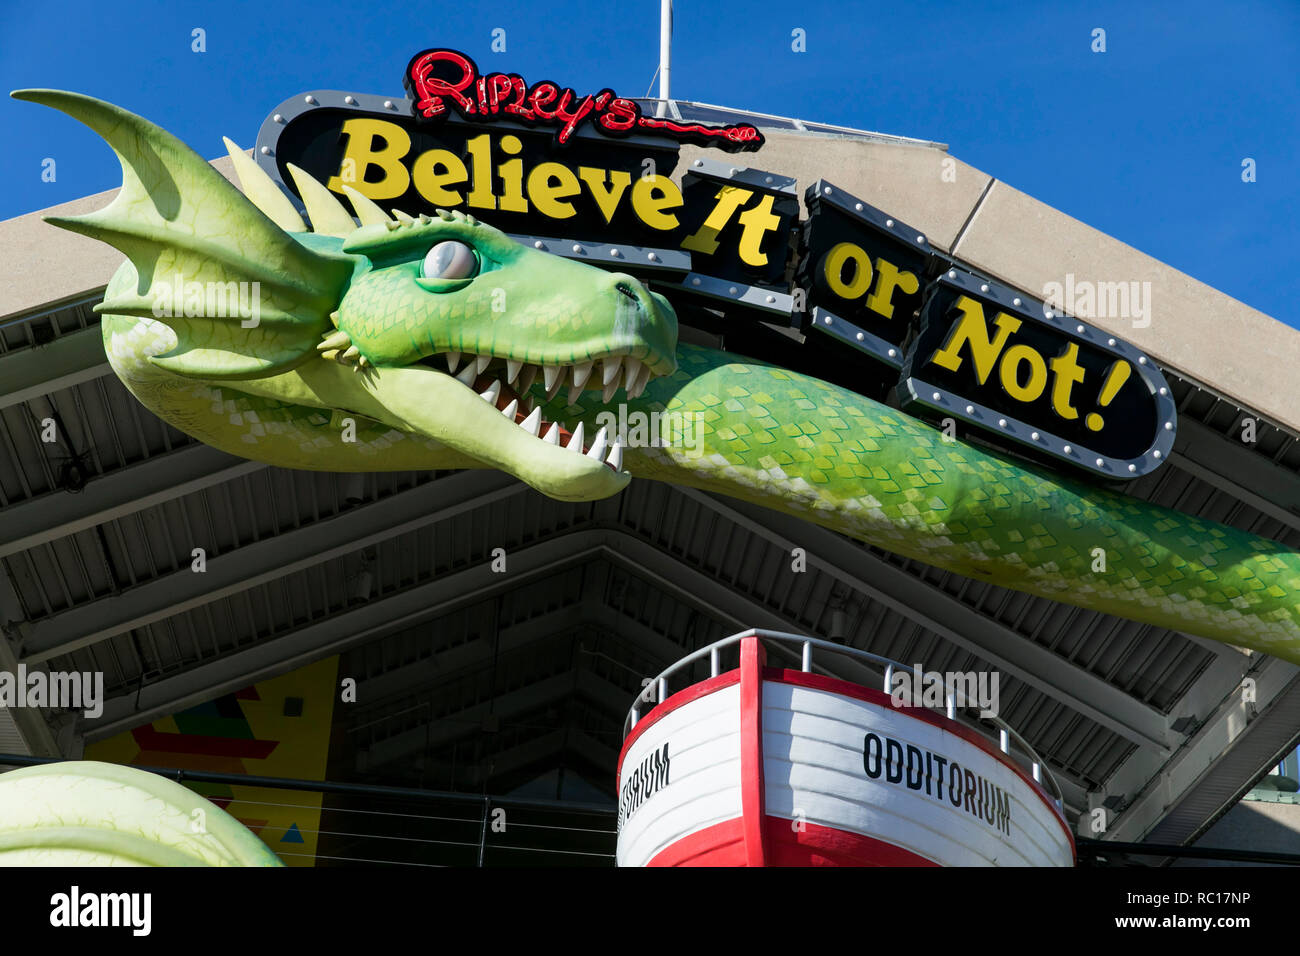 Un logo affiche à l'extérieur d'une Ripley's croyez-le ou non lieu à Baltimore, Maryland le 11 janvier 2019. Banque D'Images